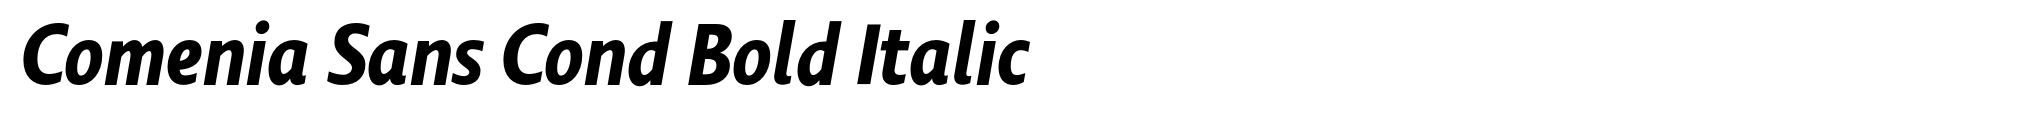 Comenia Sans Cond Bold Italic image